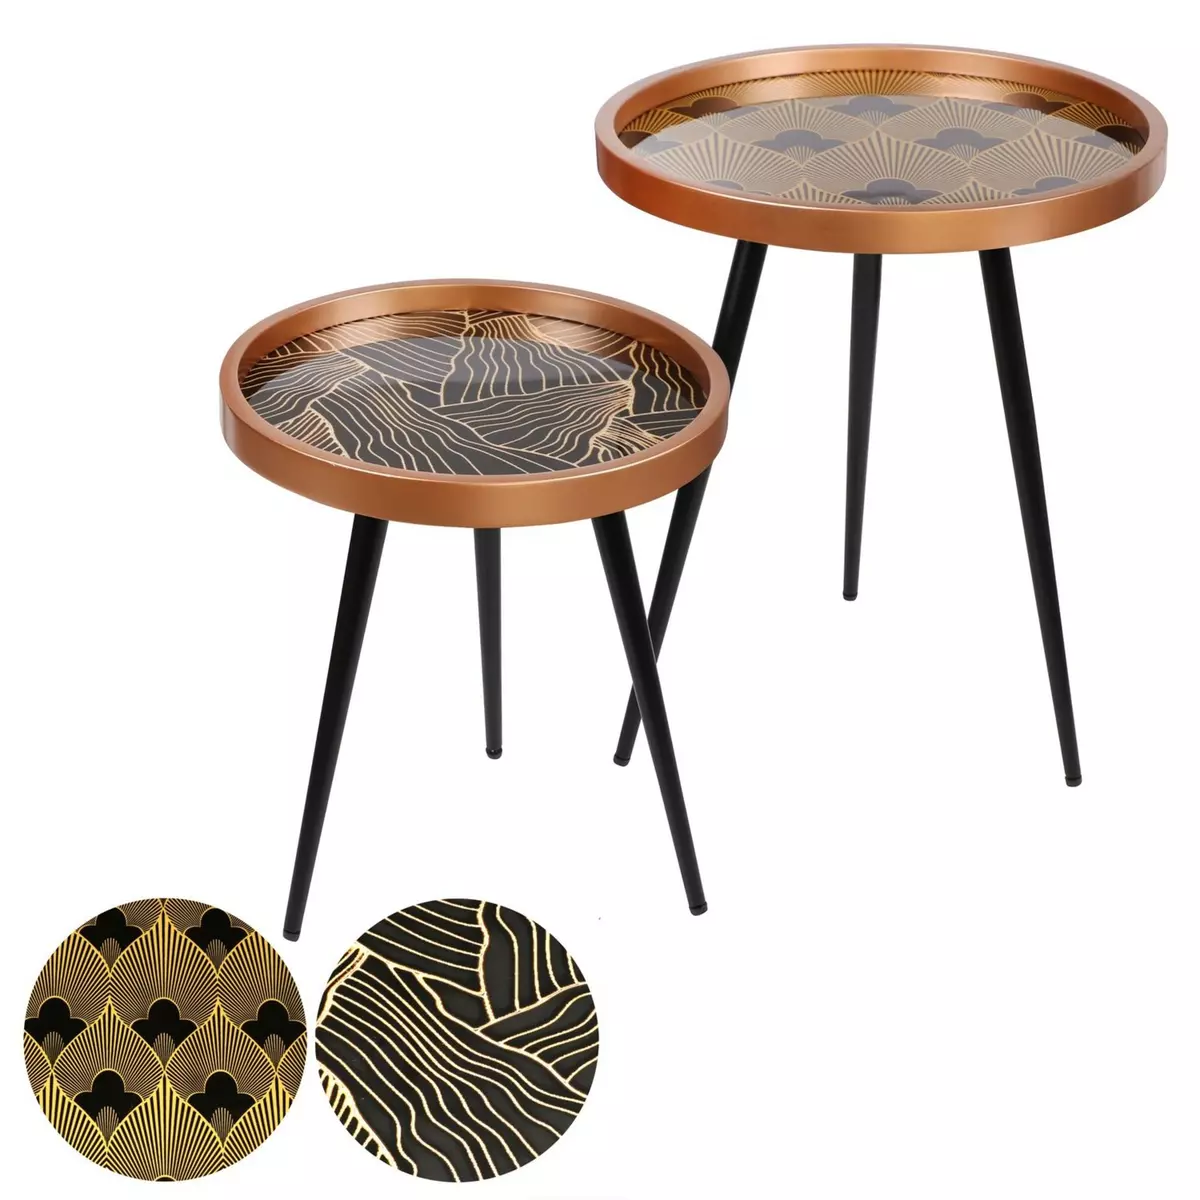 DIVERS 2 Tables d'appoint design Art Décoration - Noir et doré